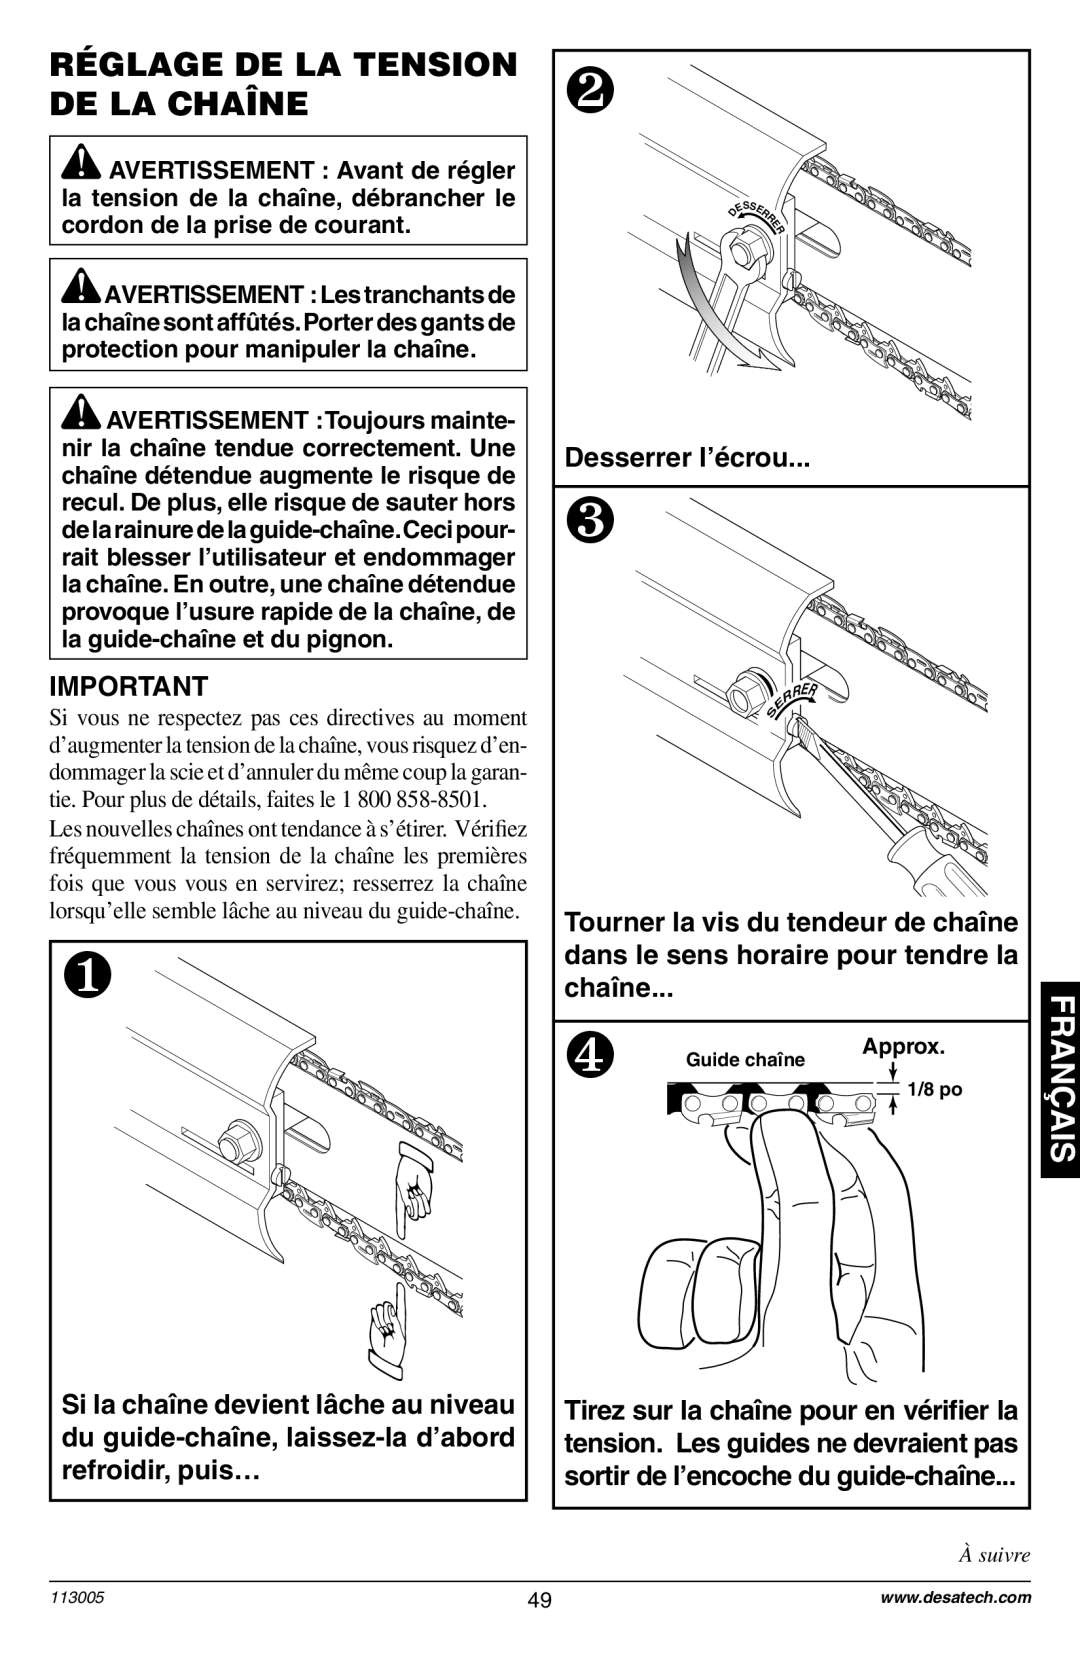 Remington Power Tools Electric Chain Saw owner manual Réglage De La Tension De La Chaîne, Desserrer l’écrou, chaîne 